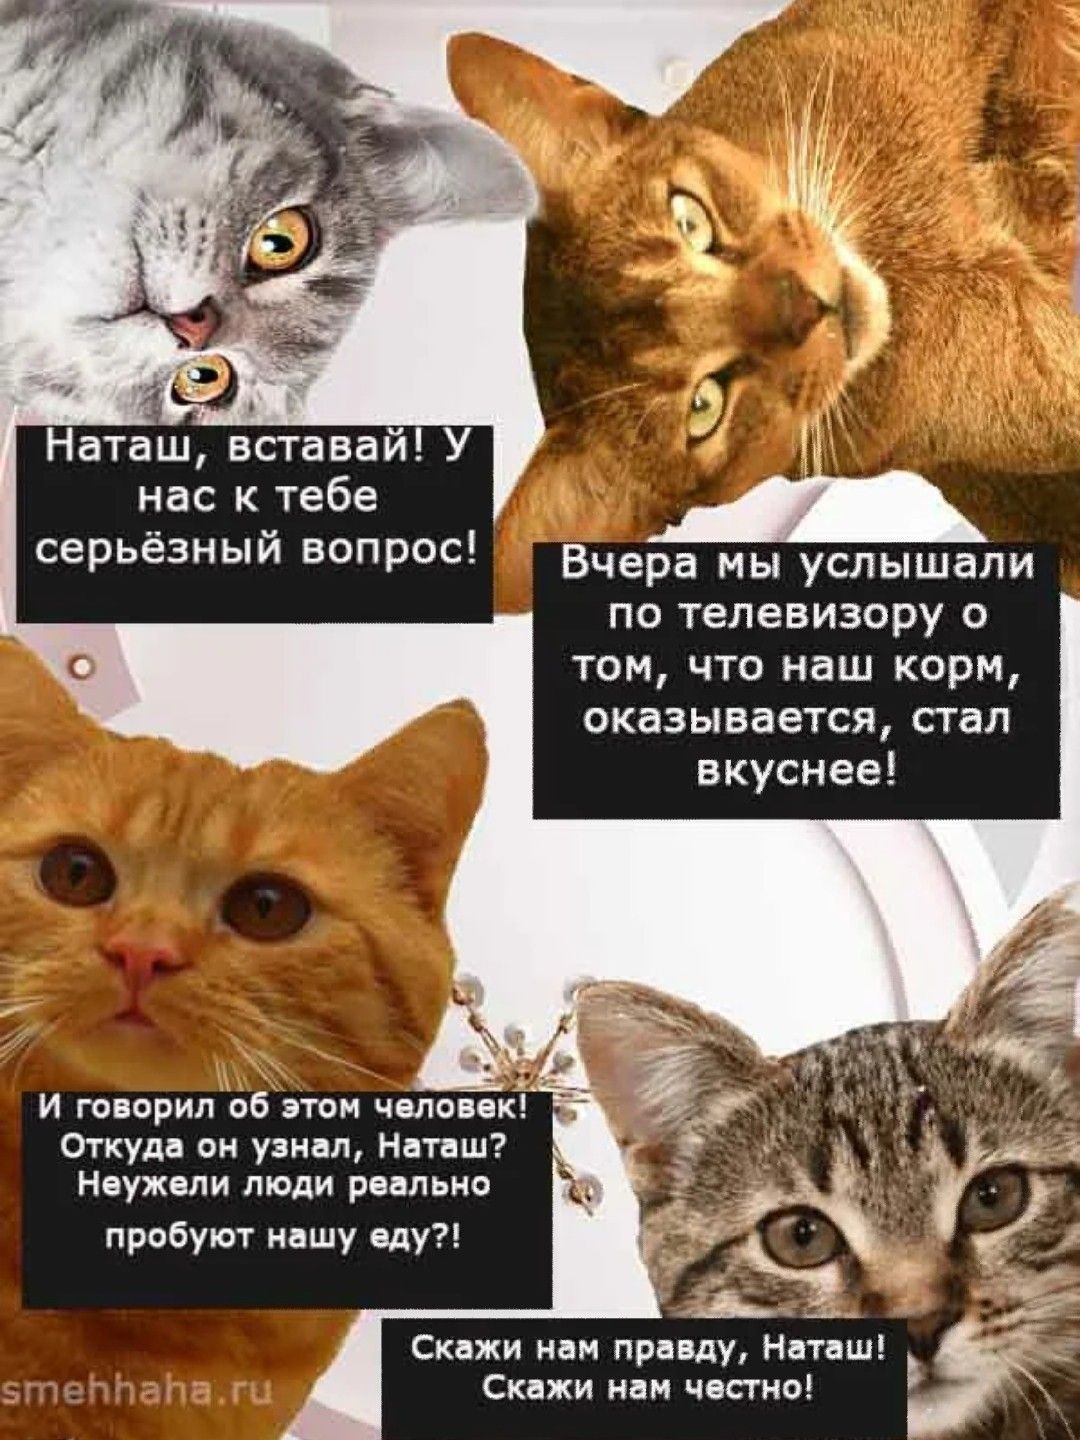 Свежие мемы про Наташу и котов